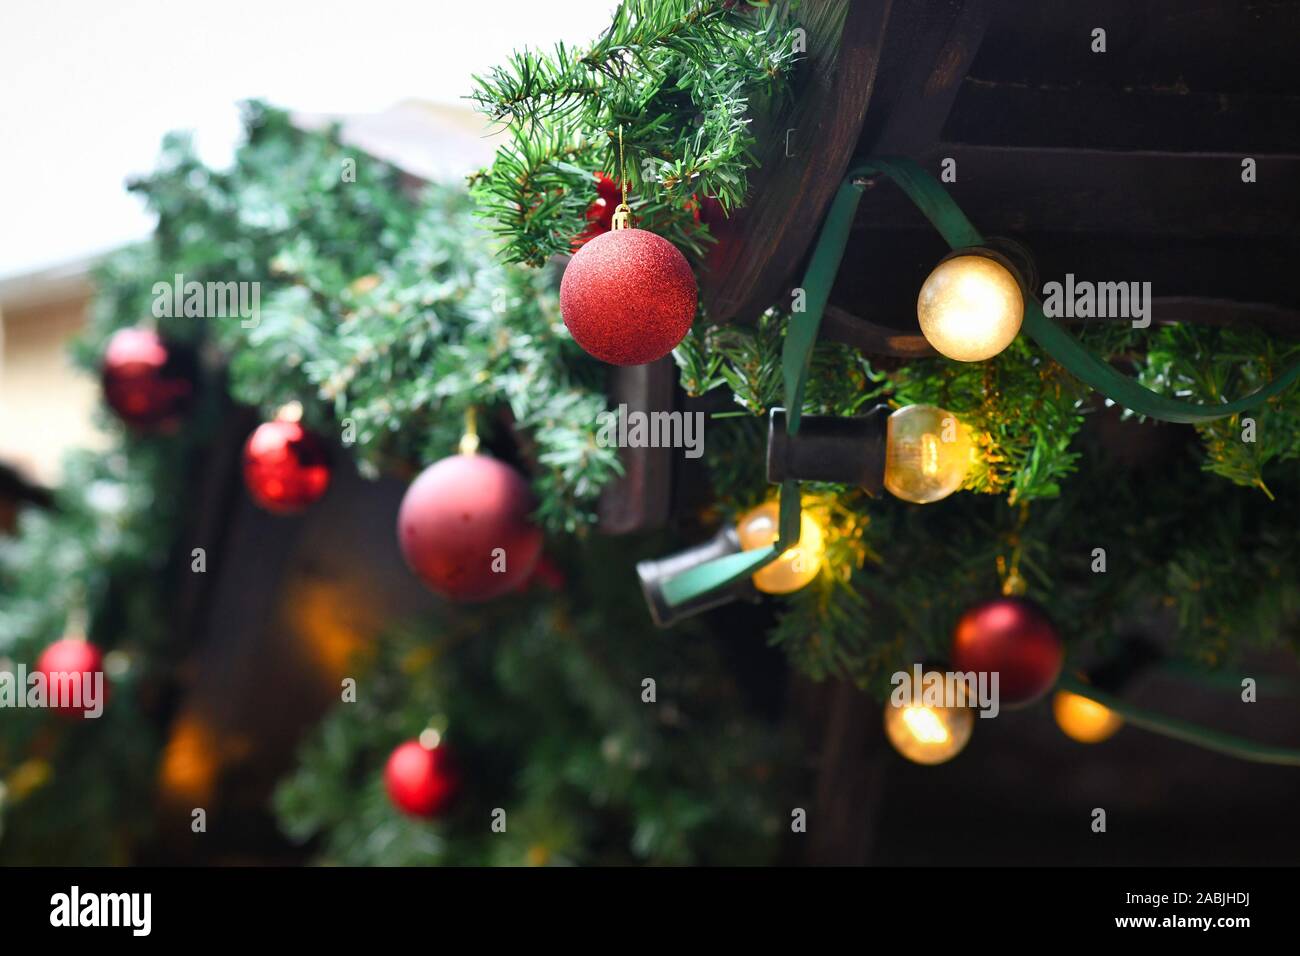 Weihnachtsbaum mit künstlichem Schnee mit Tannenzapfen und Red tree ornament Flitter und Lichterkette im Hintergrund Stockfoto